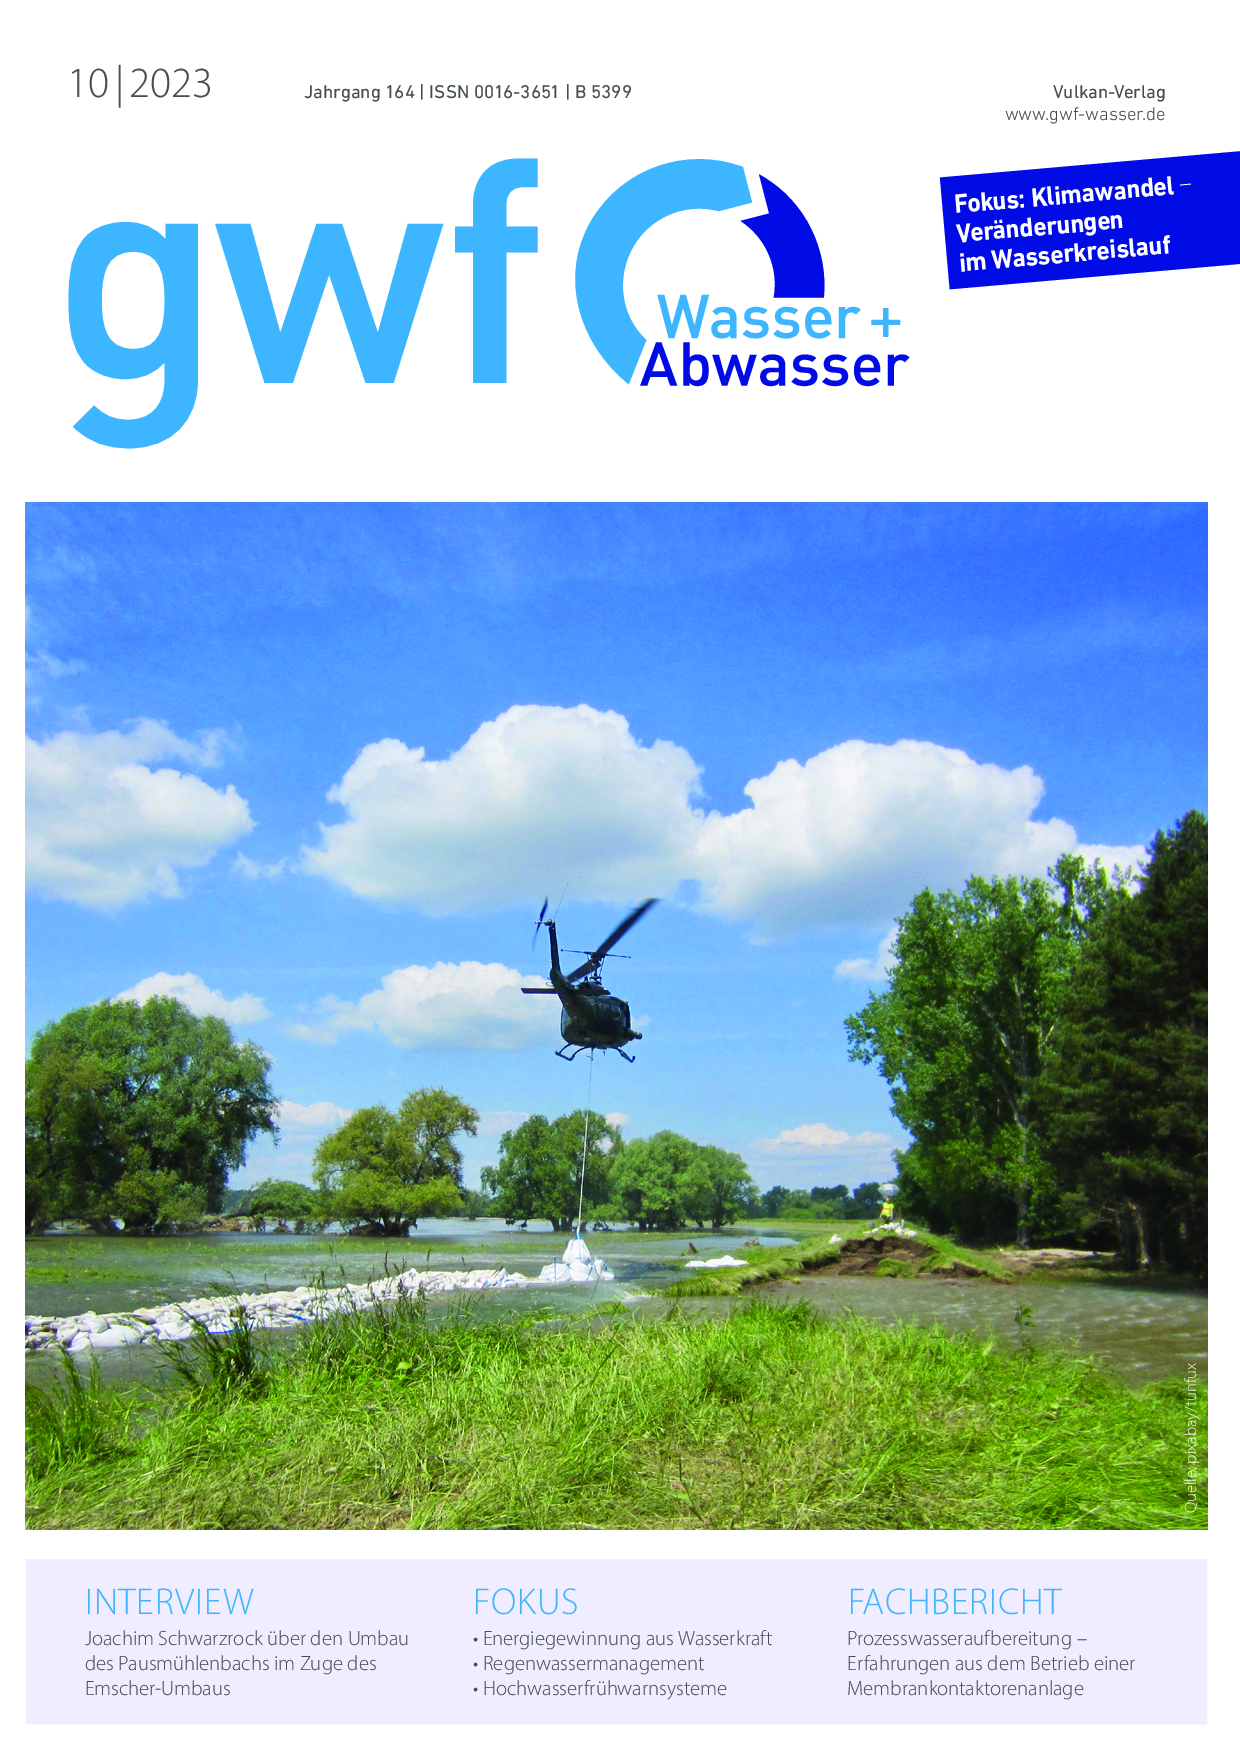 gwf – Wasser|Abwasser – 10 2023